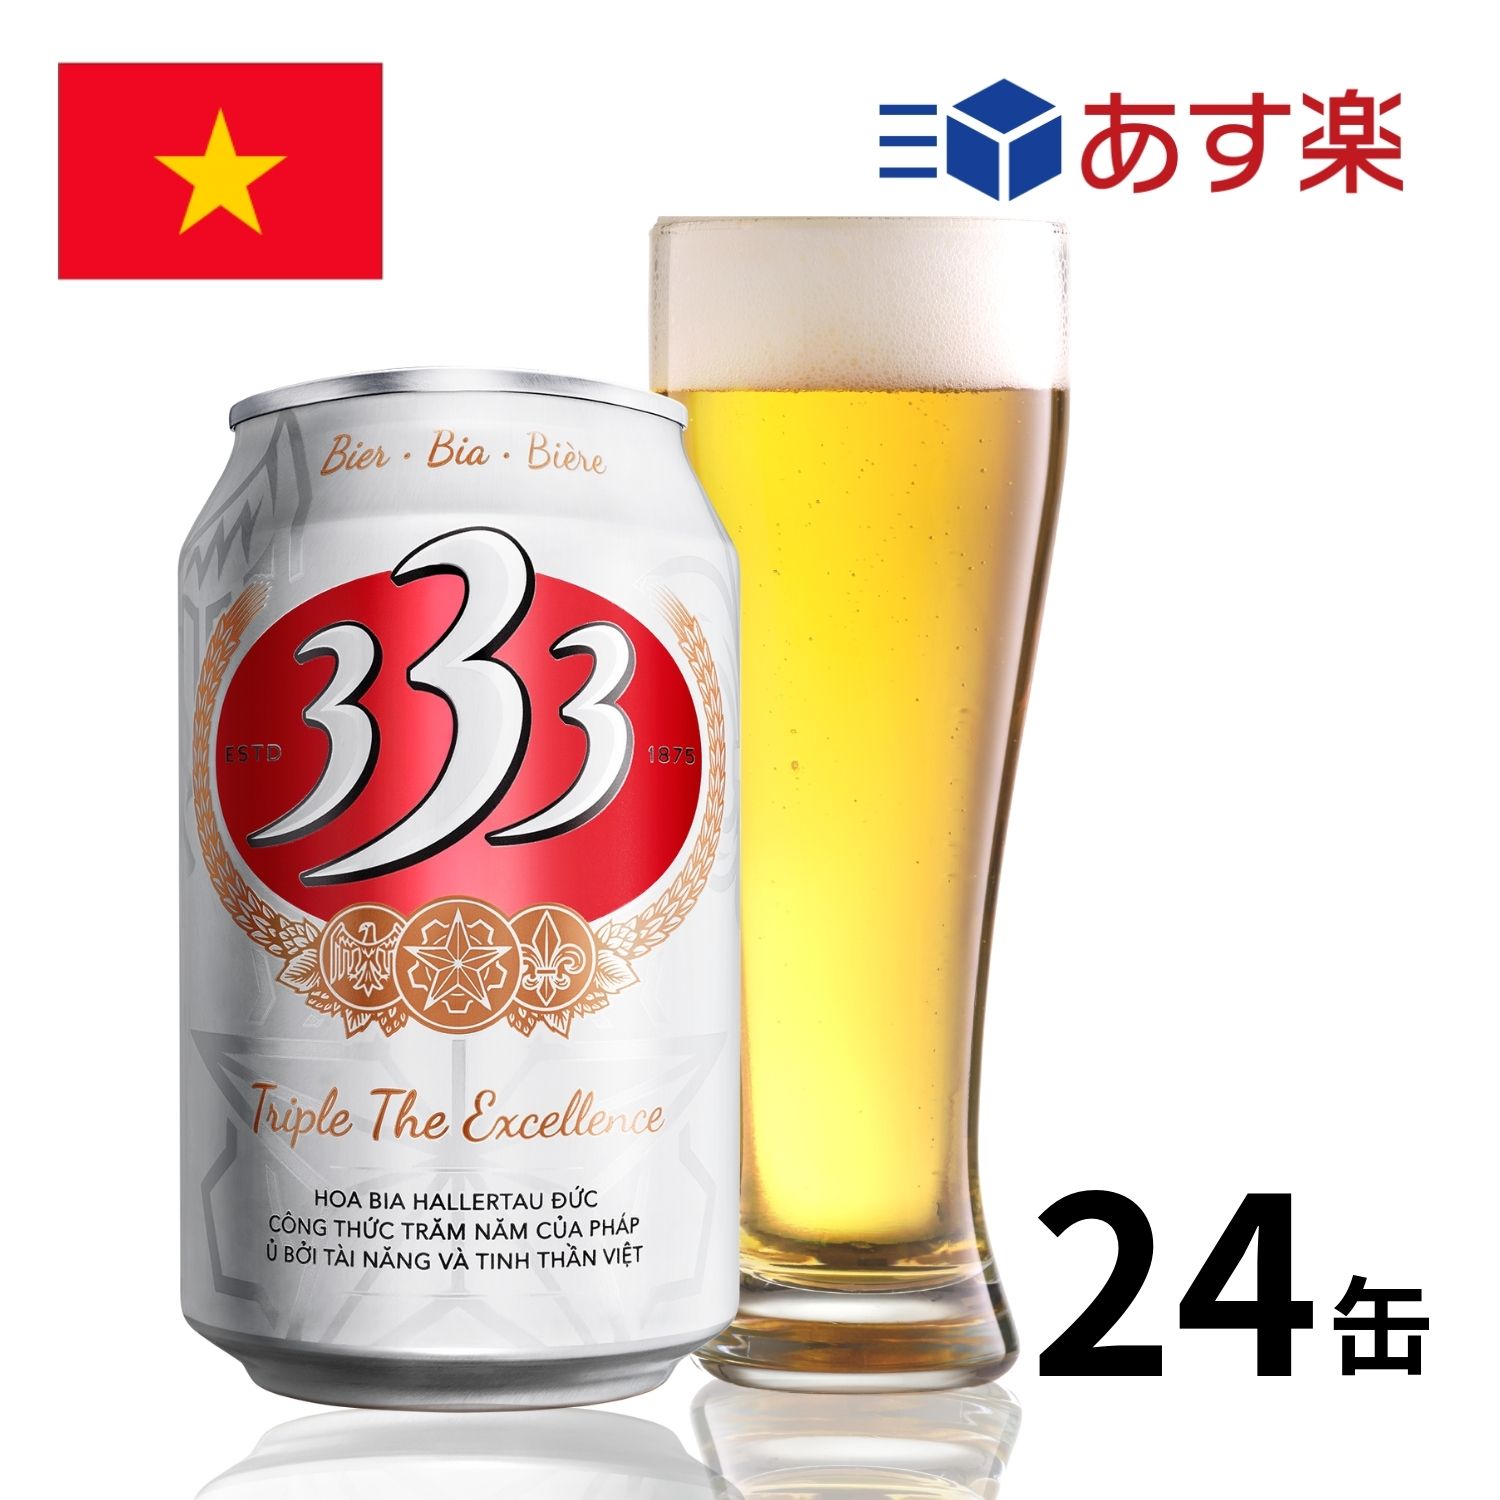 ［あす楽］ベトナム 333ビール缶 (330ml x 24本入) 333 バーバーバ― クラフトビール 世界のビール 海外ビール ビール 正規輸入品 あす楽 1